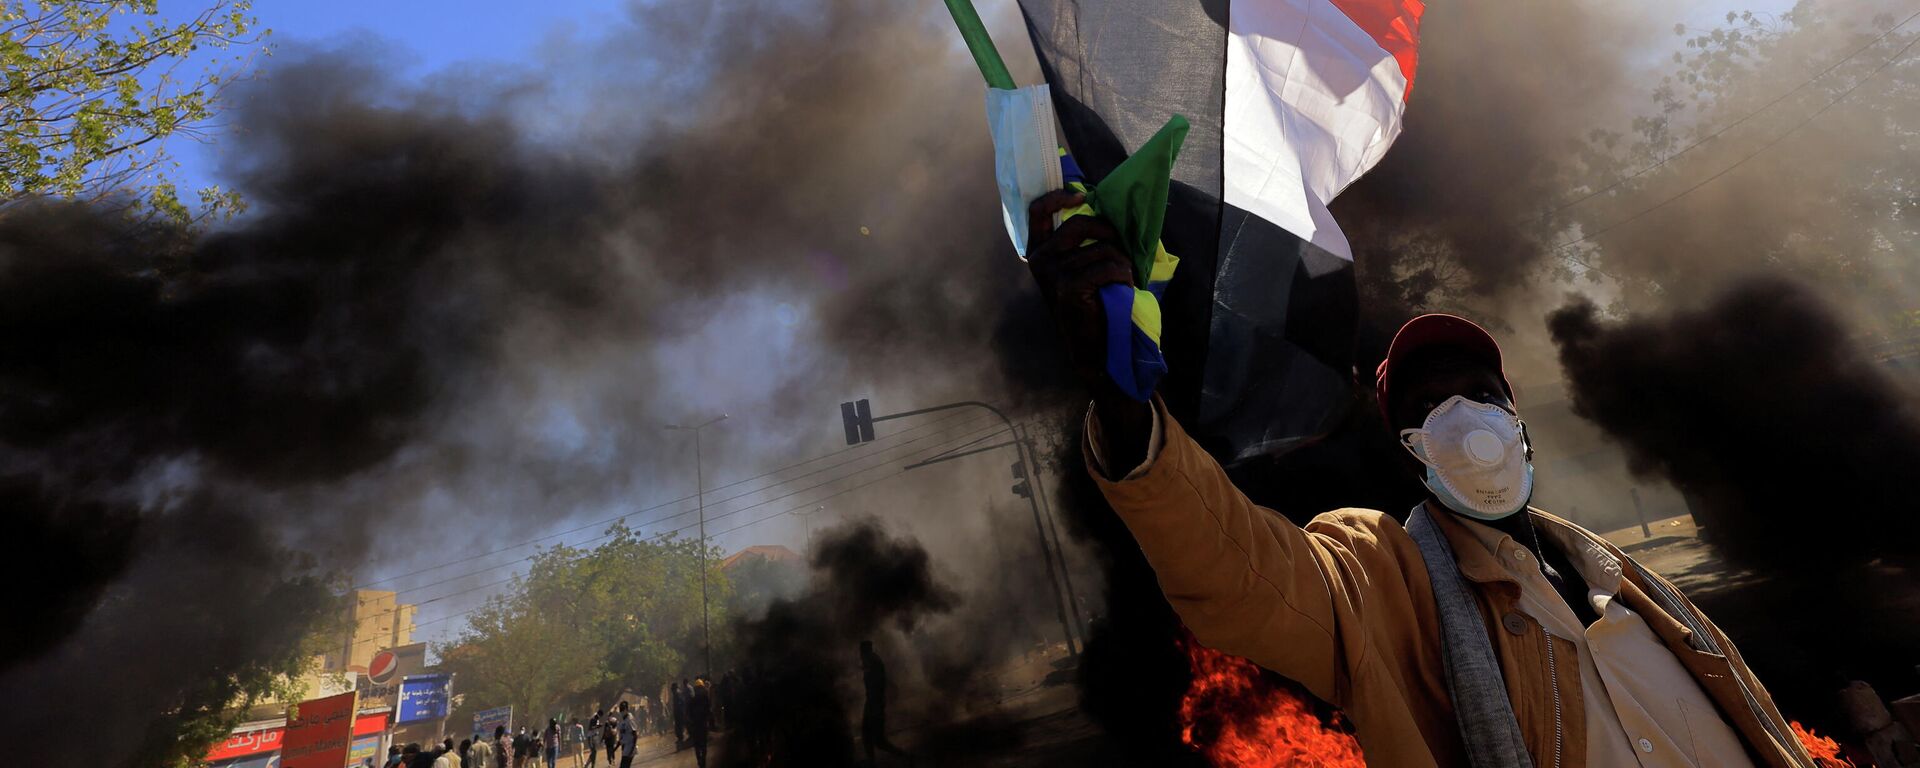 متظاهر في السودان يرفع علم بلاده أثناء احتجاجات الجمعة 31 ديسمبر  - سبوتنيك عربي, 1920, 02.03.2022